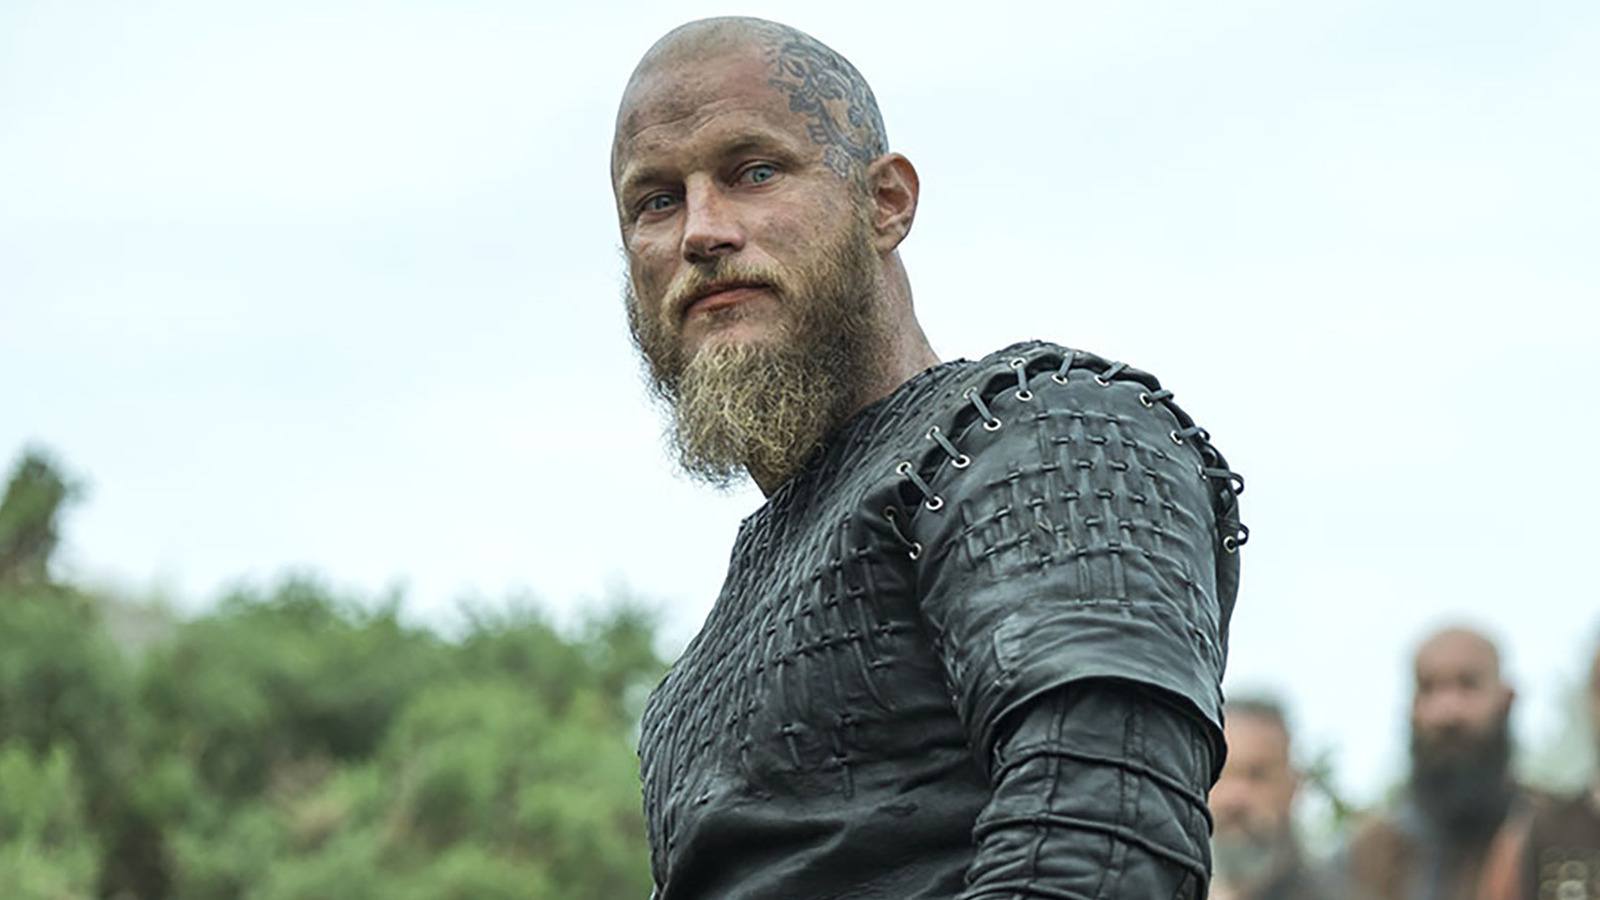 Vikings: Lagertha reacts as Bjorn Ironside marries his girlfriend